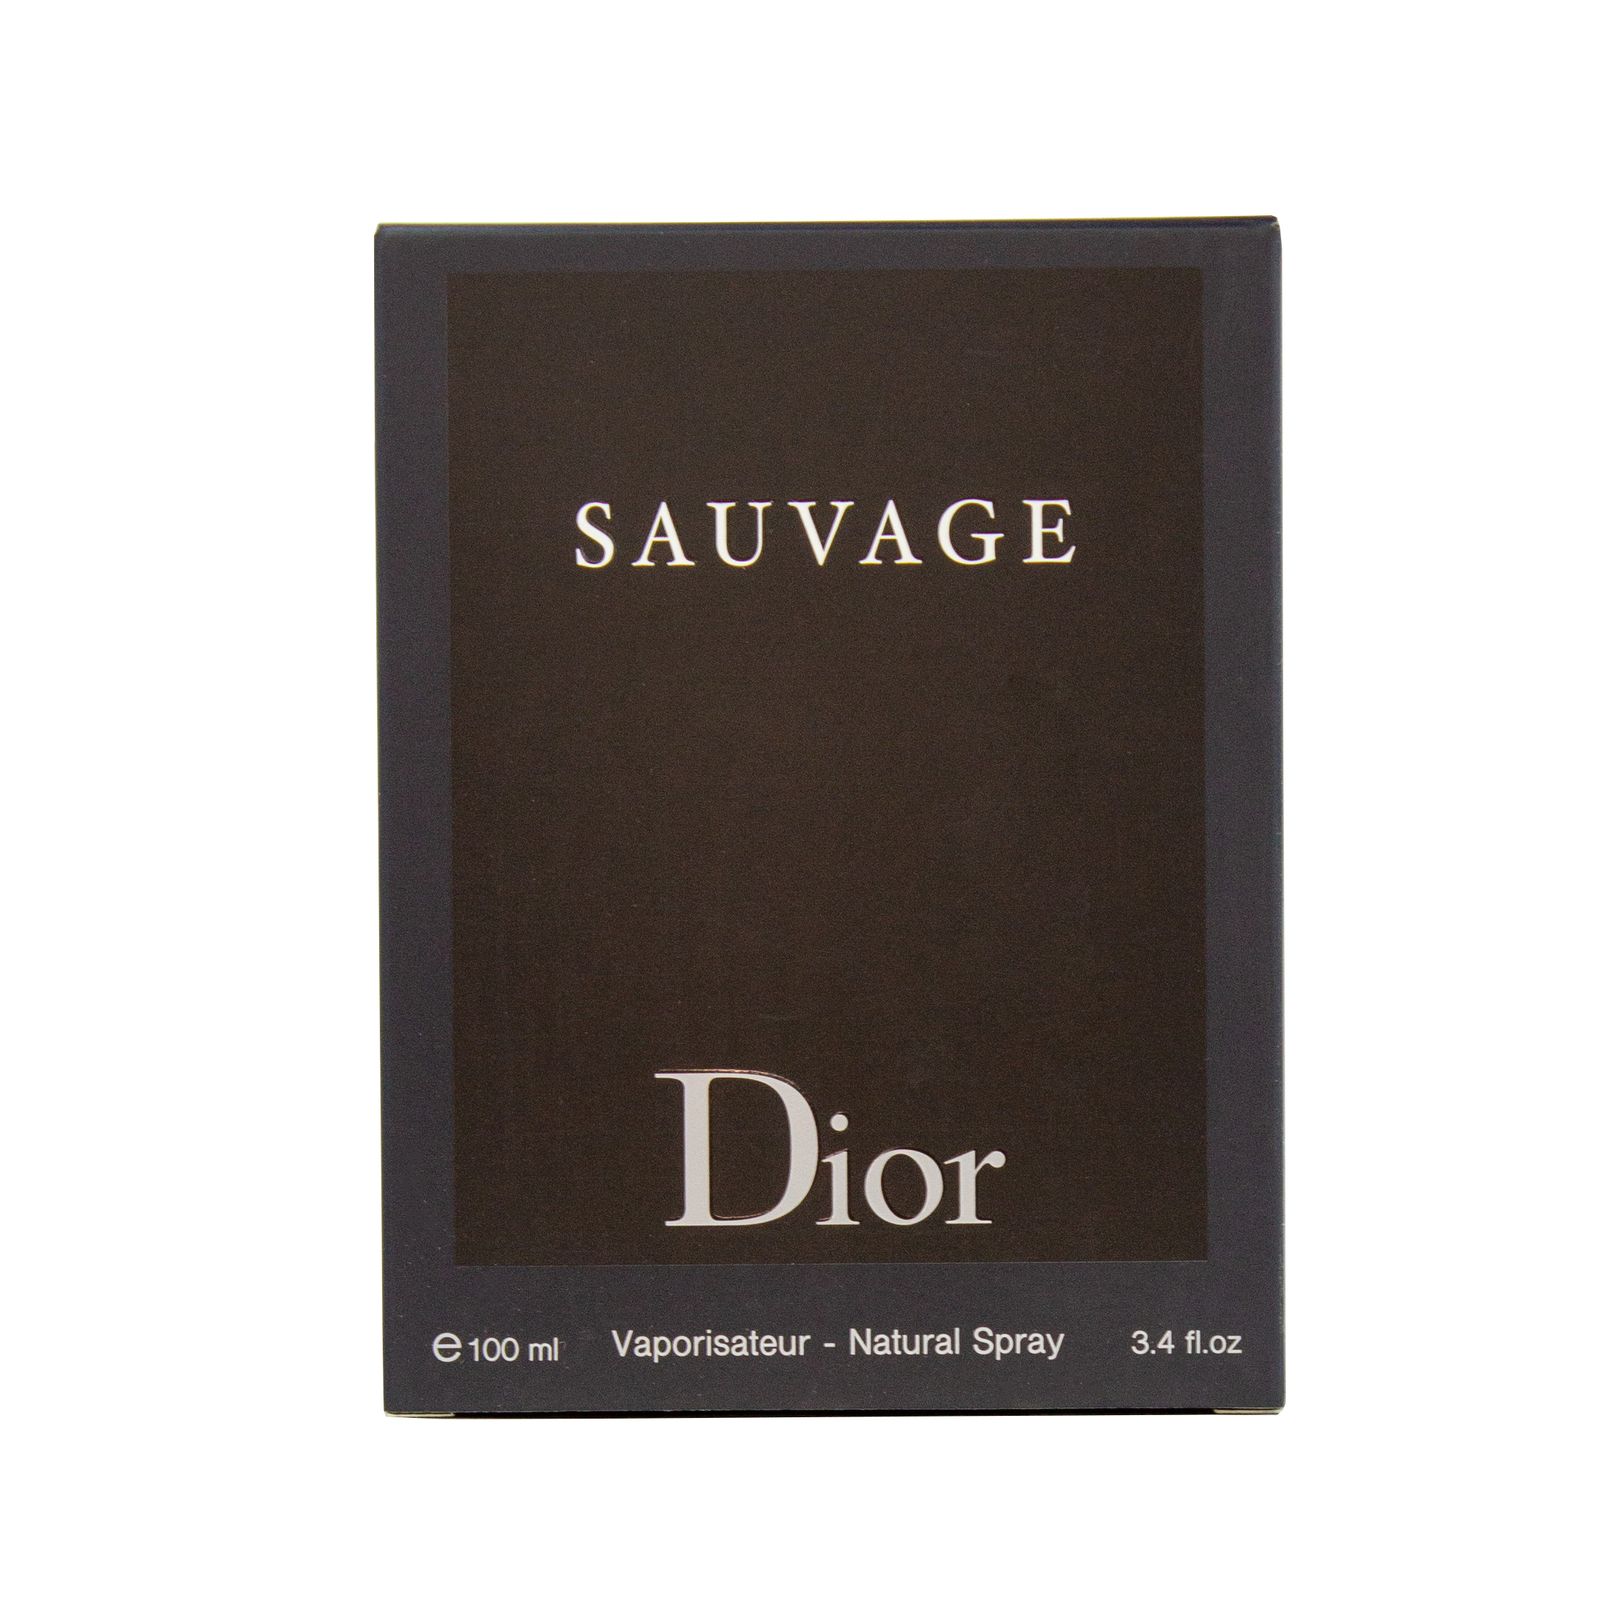 ادو تویلت مردانه پرستیژ مدل Sauvage Dior حجم 100 میلی لیتر -  - 3